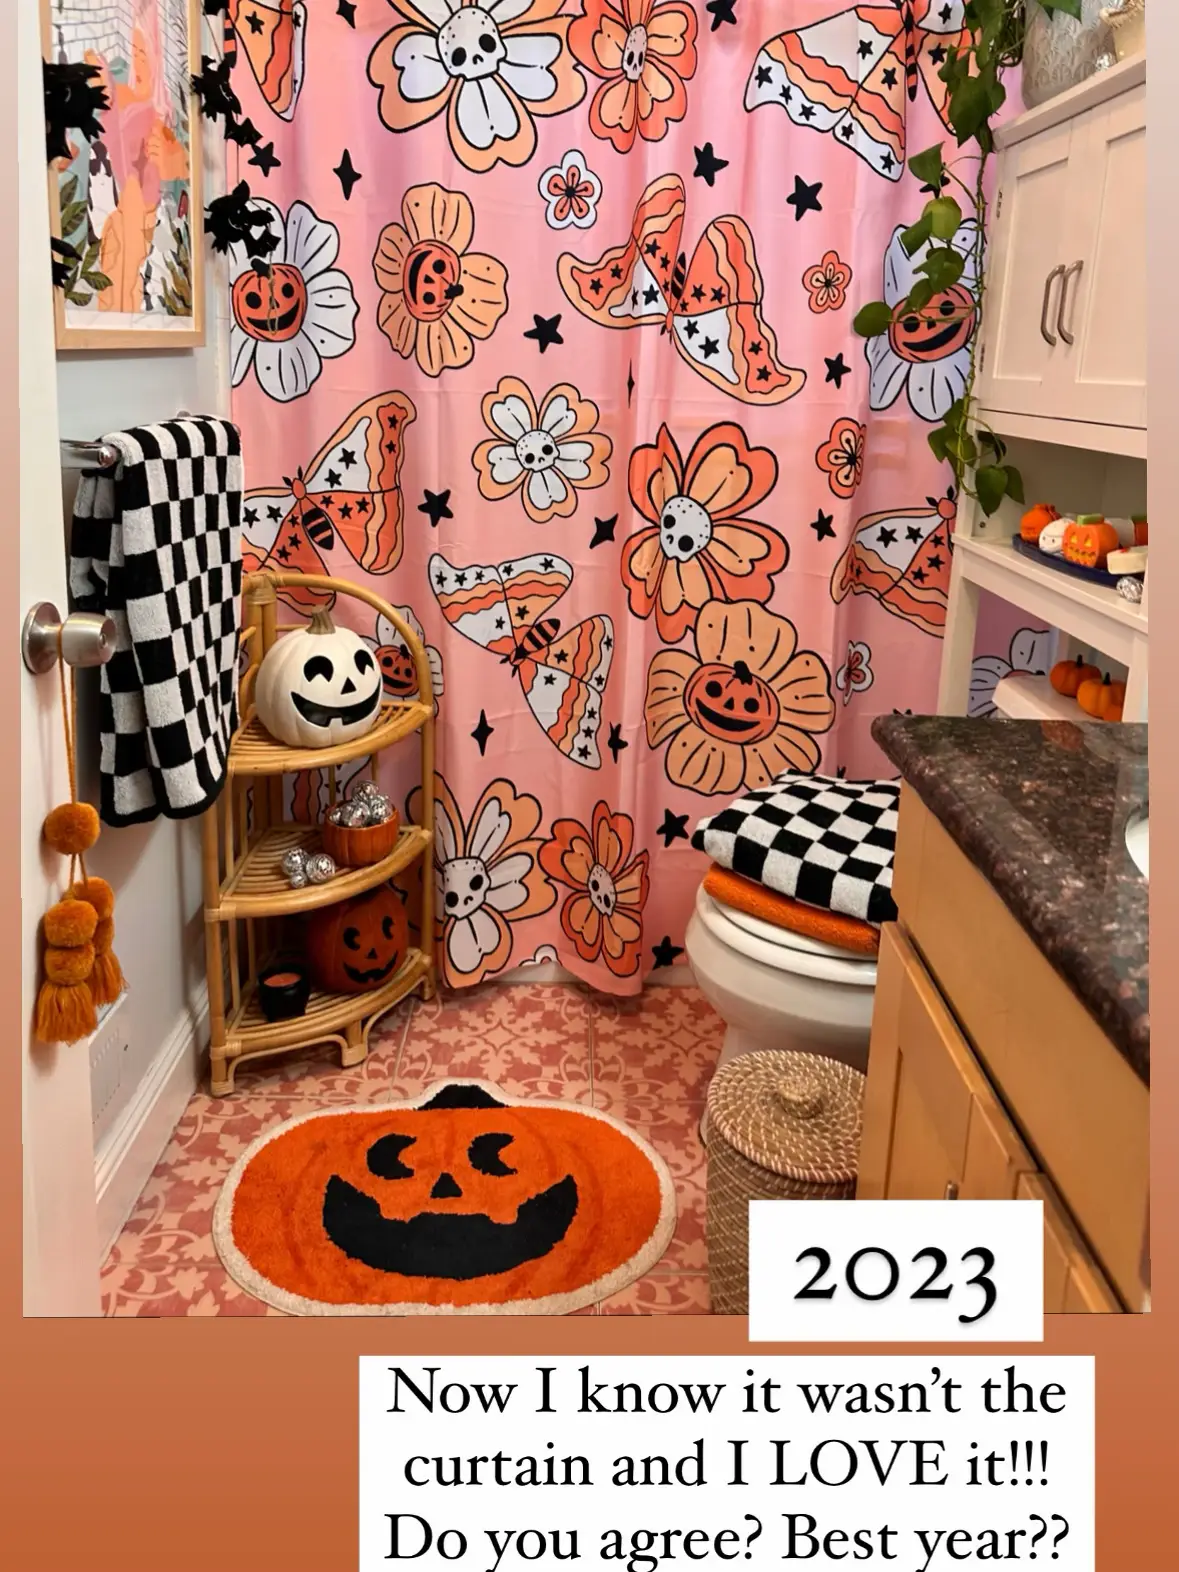  A bathroom with a checkered curtain and a pumpkin rug.